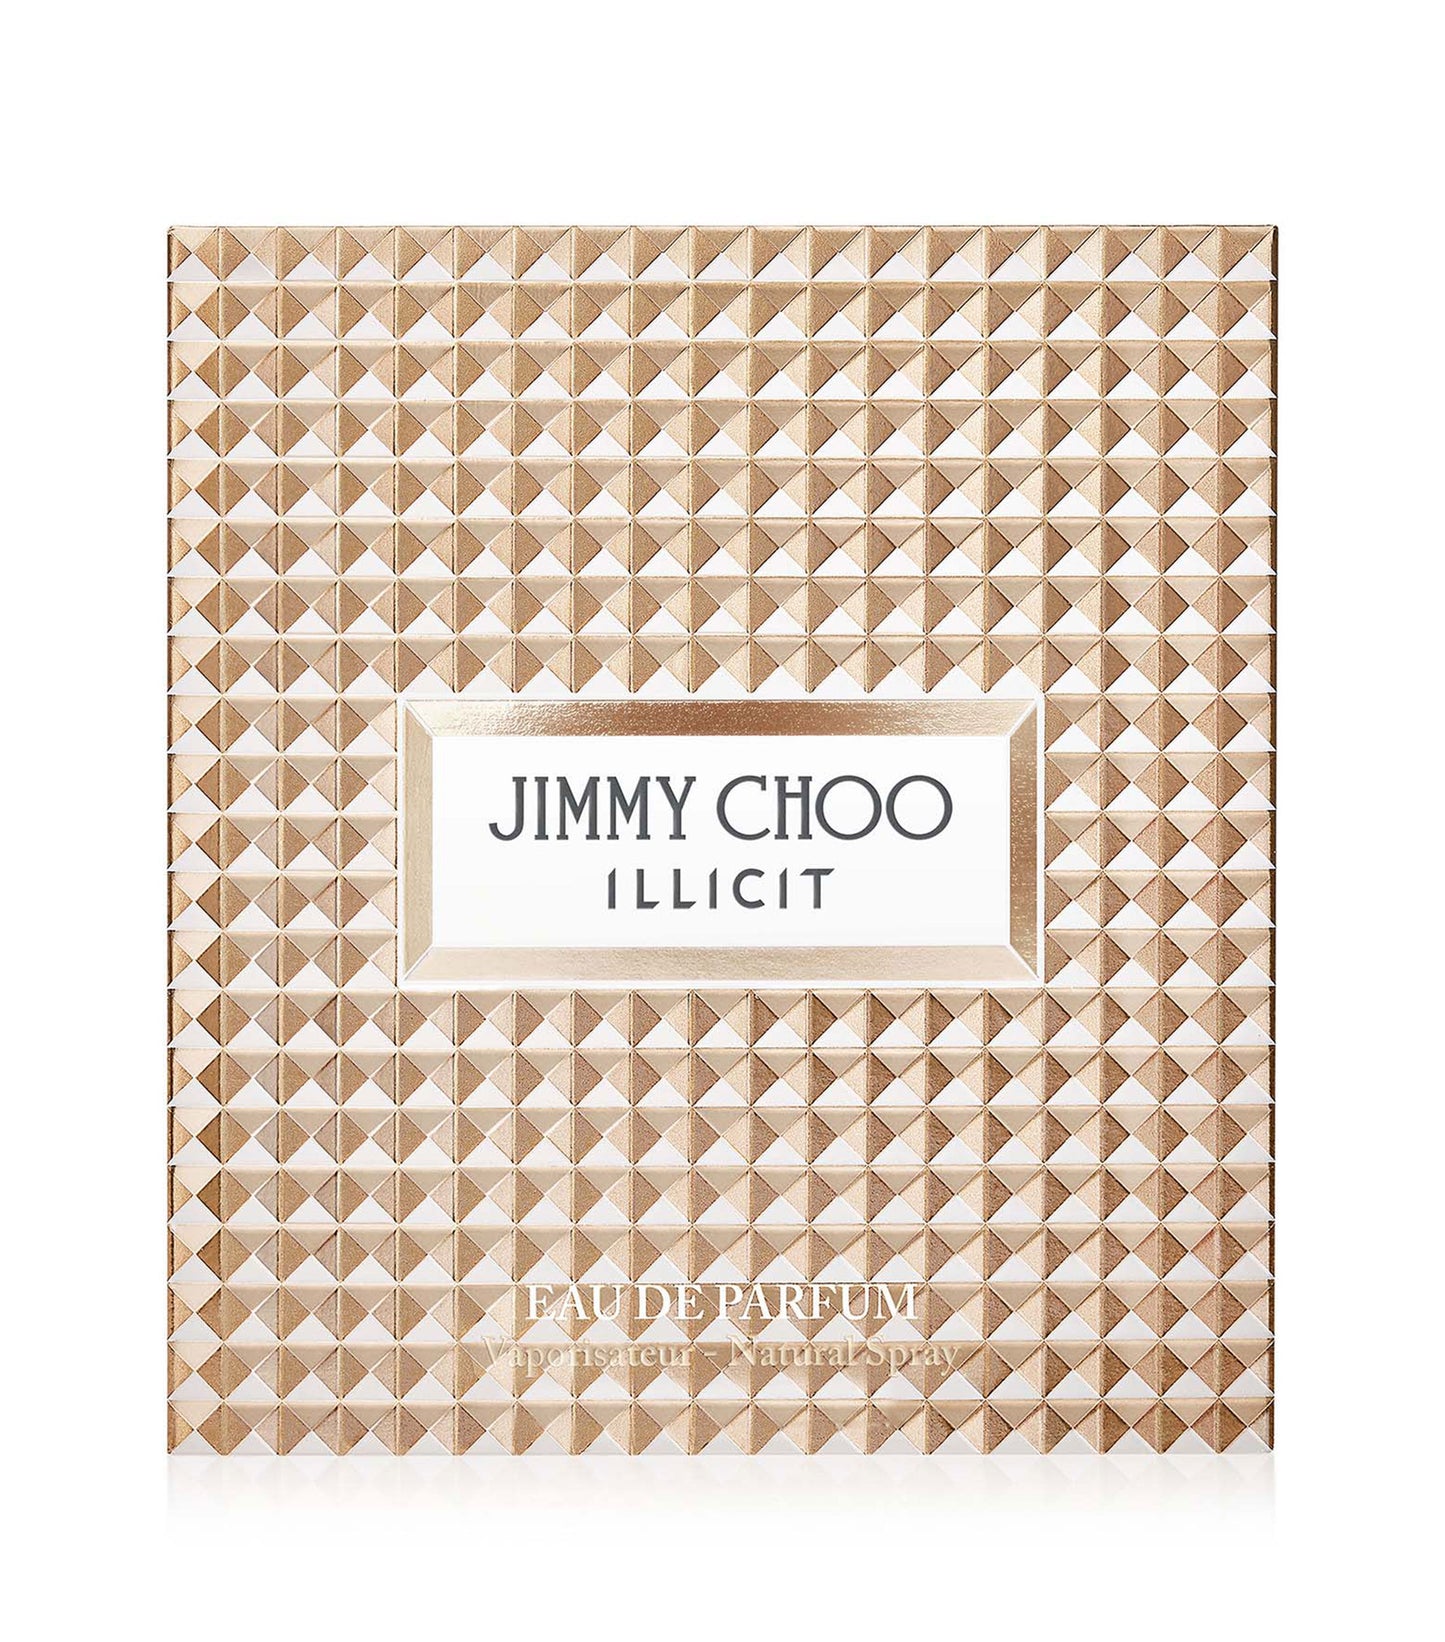 Fragancia Jimmy Choo